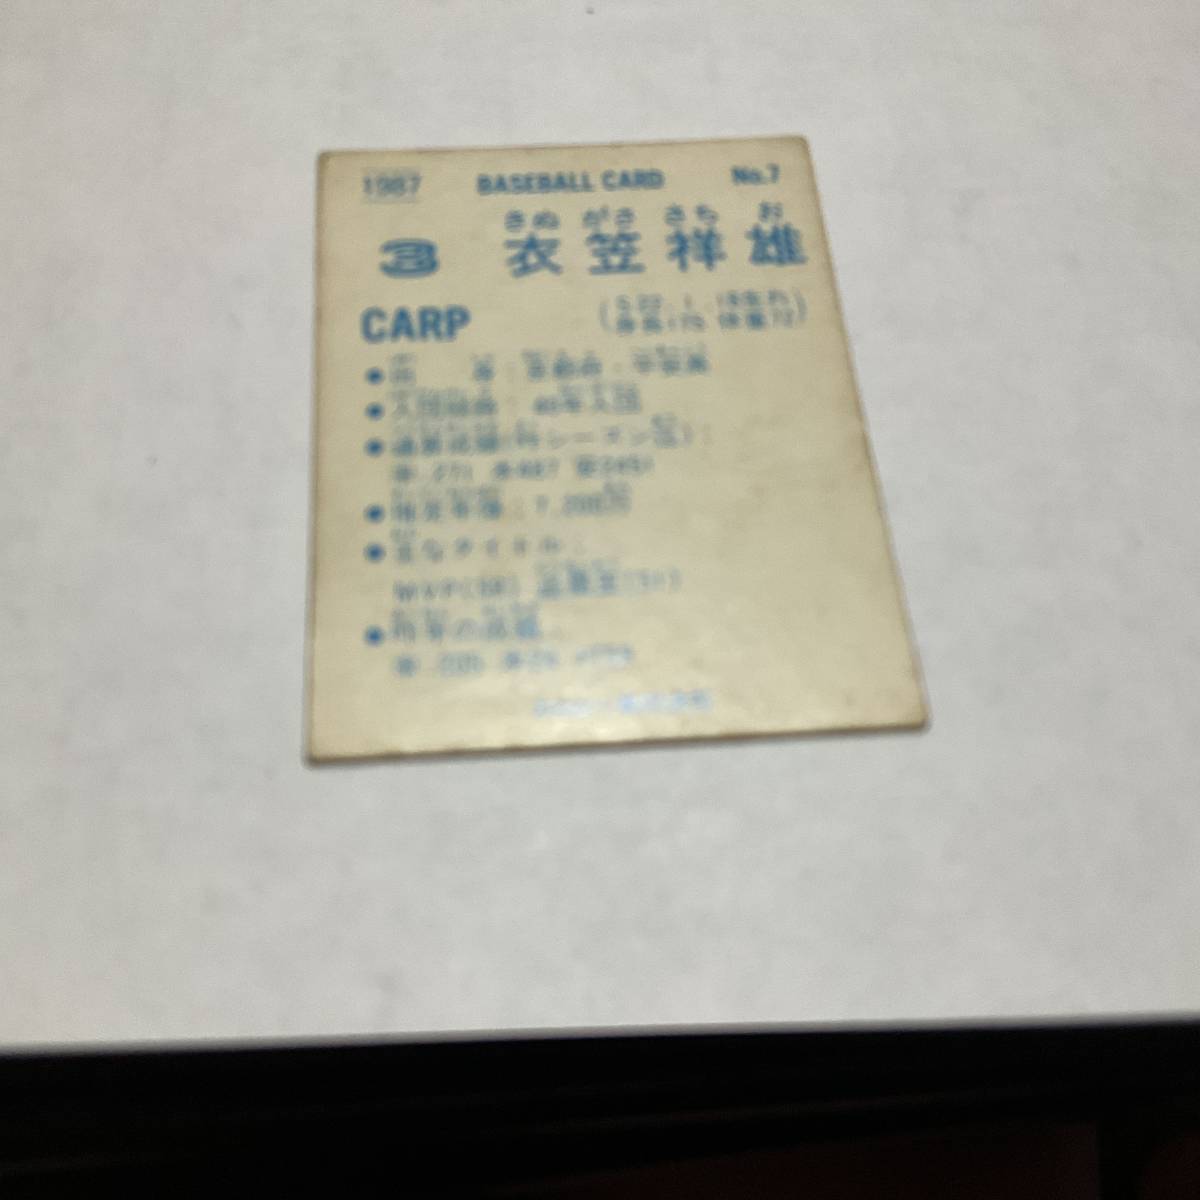 カルビープロ野球カード 1987年 衣笠祥雄(広島カープ) No.7_画像2